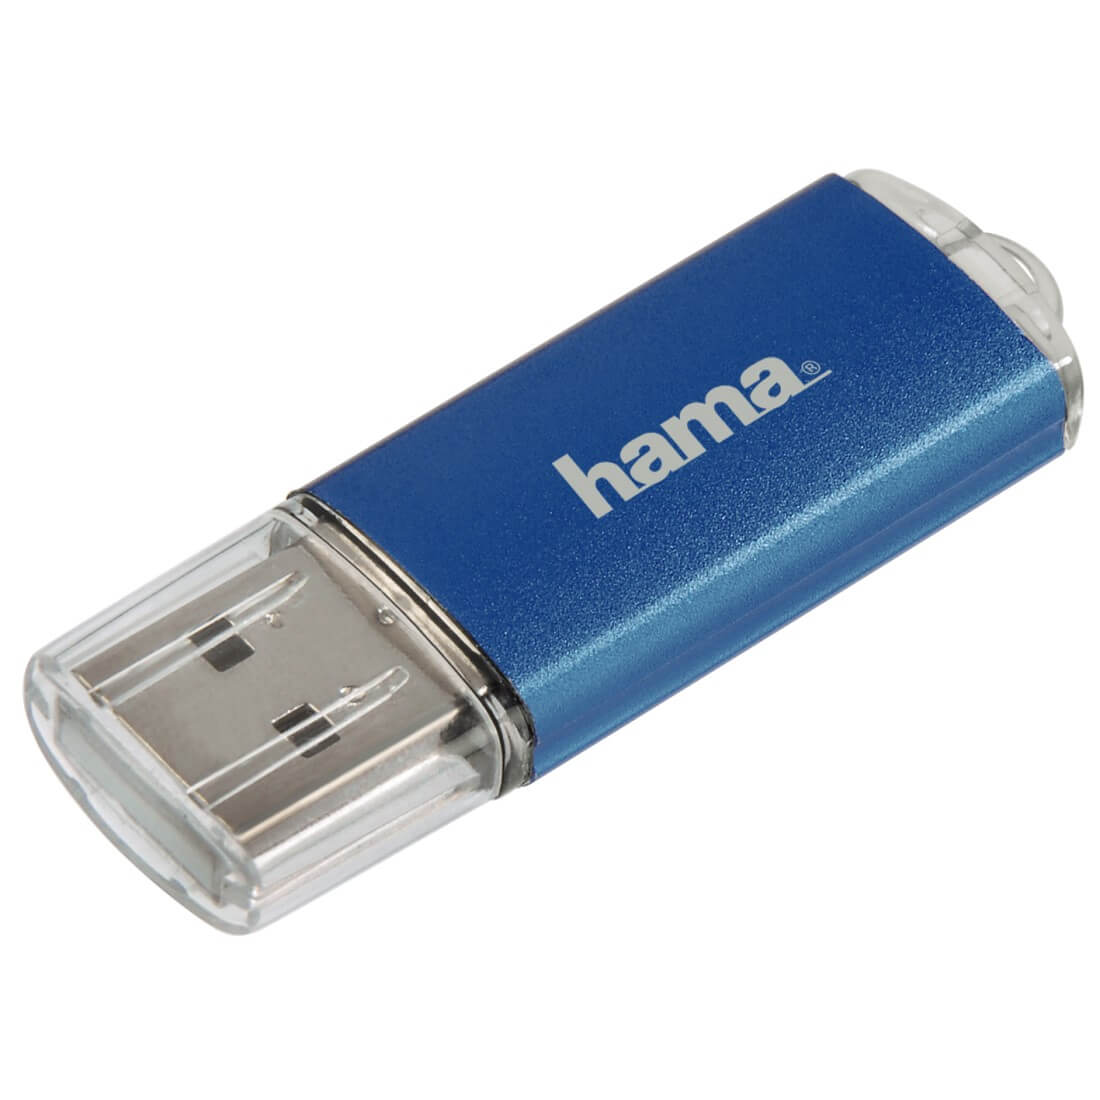  Memorie USB Hama Laeta 8GB, Albastru 